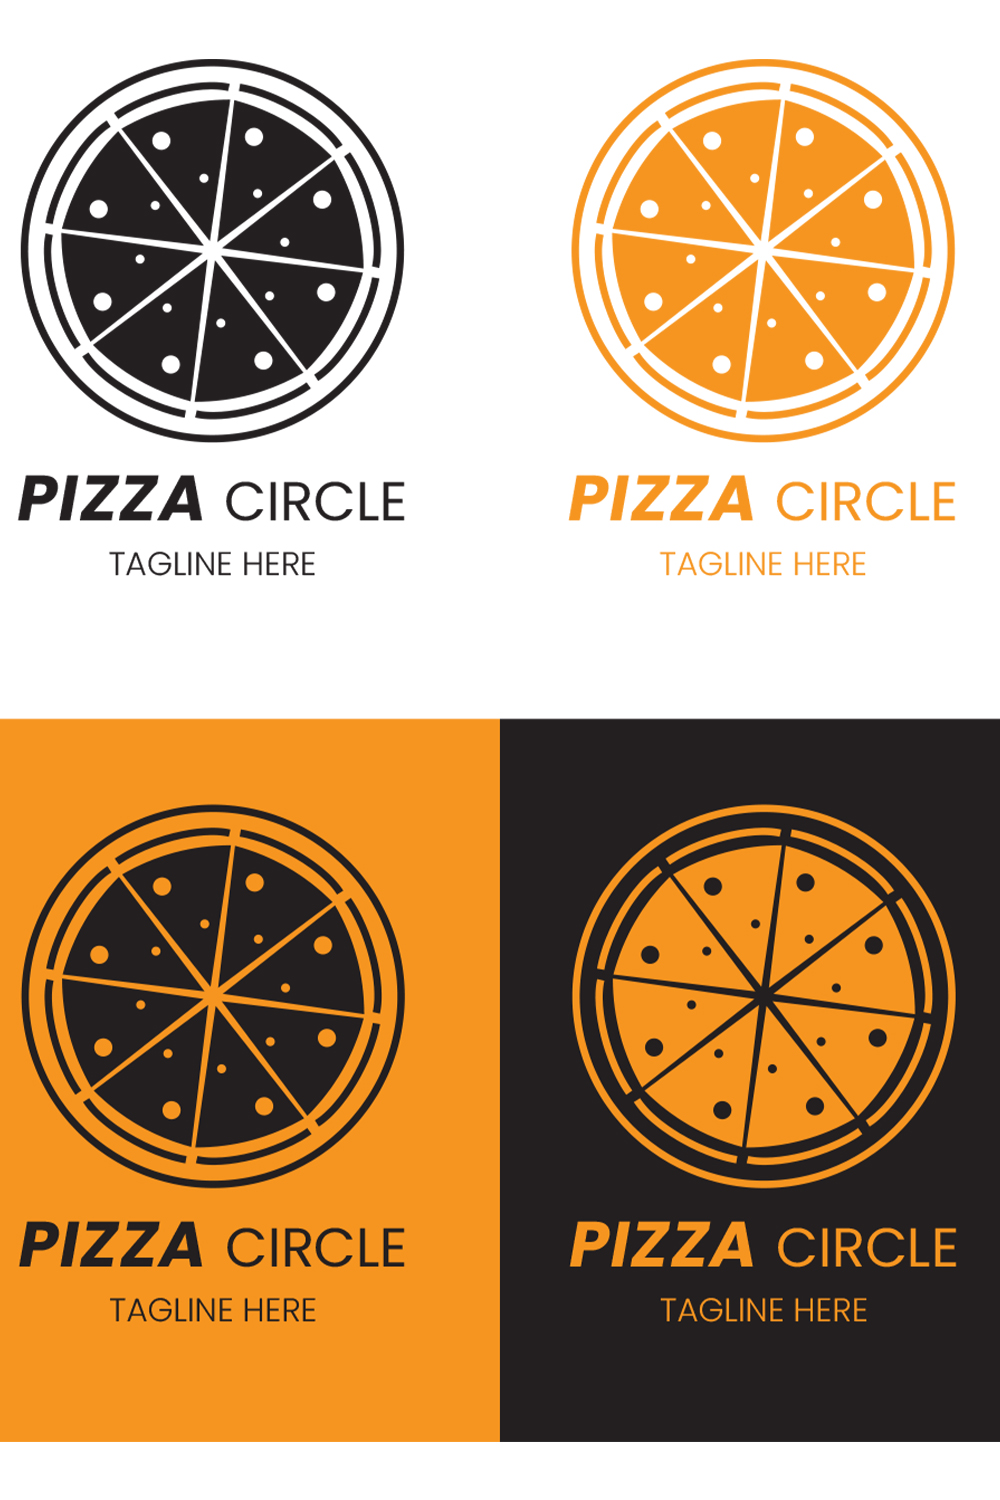 pizza circle logo pin 83